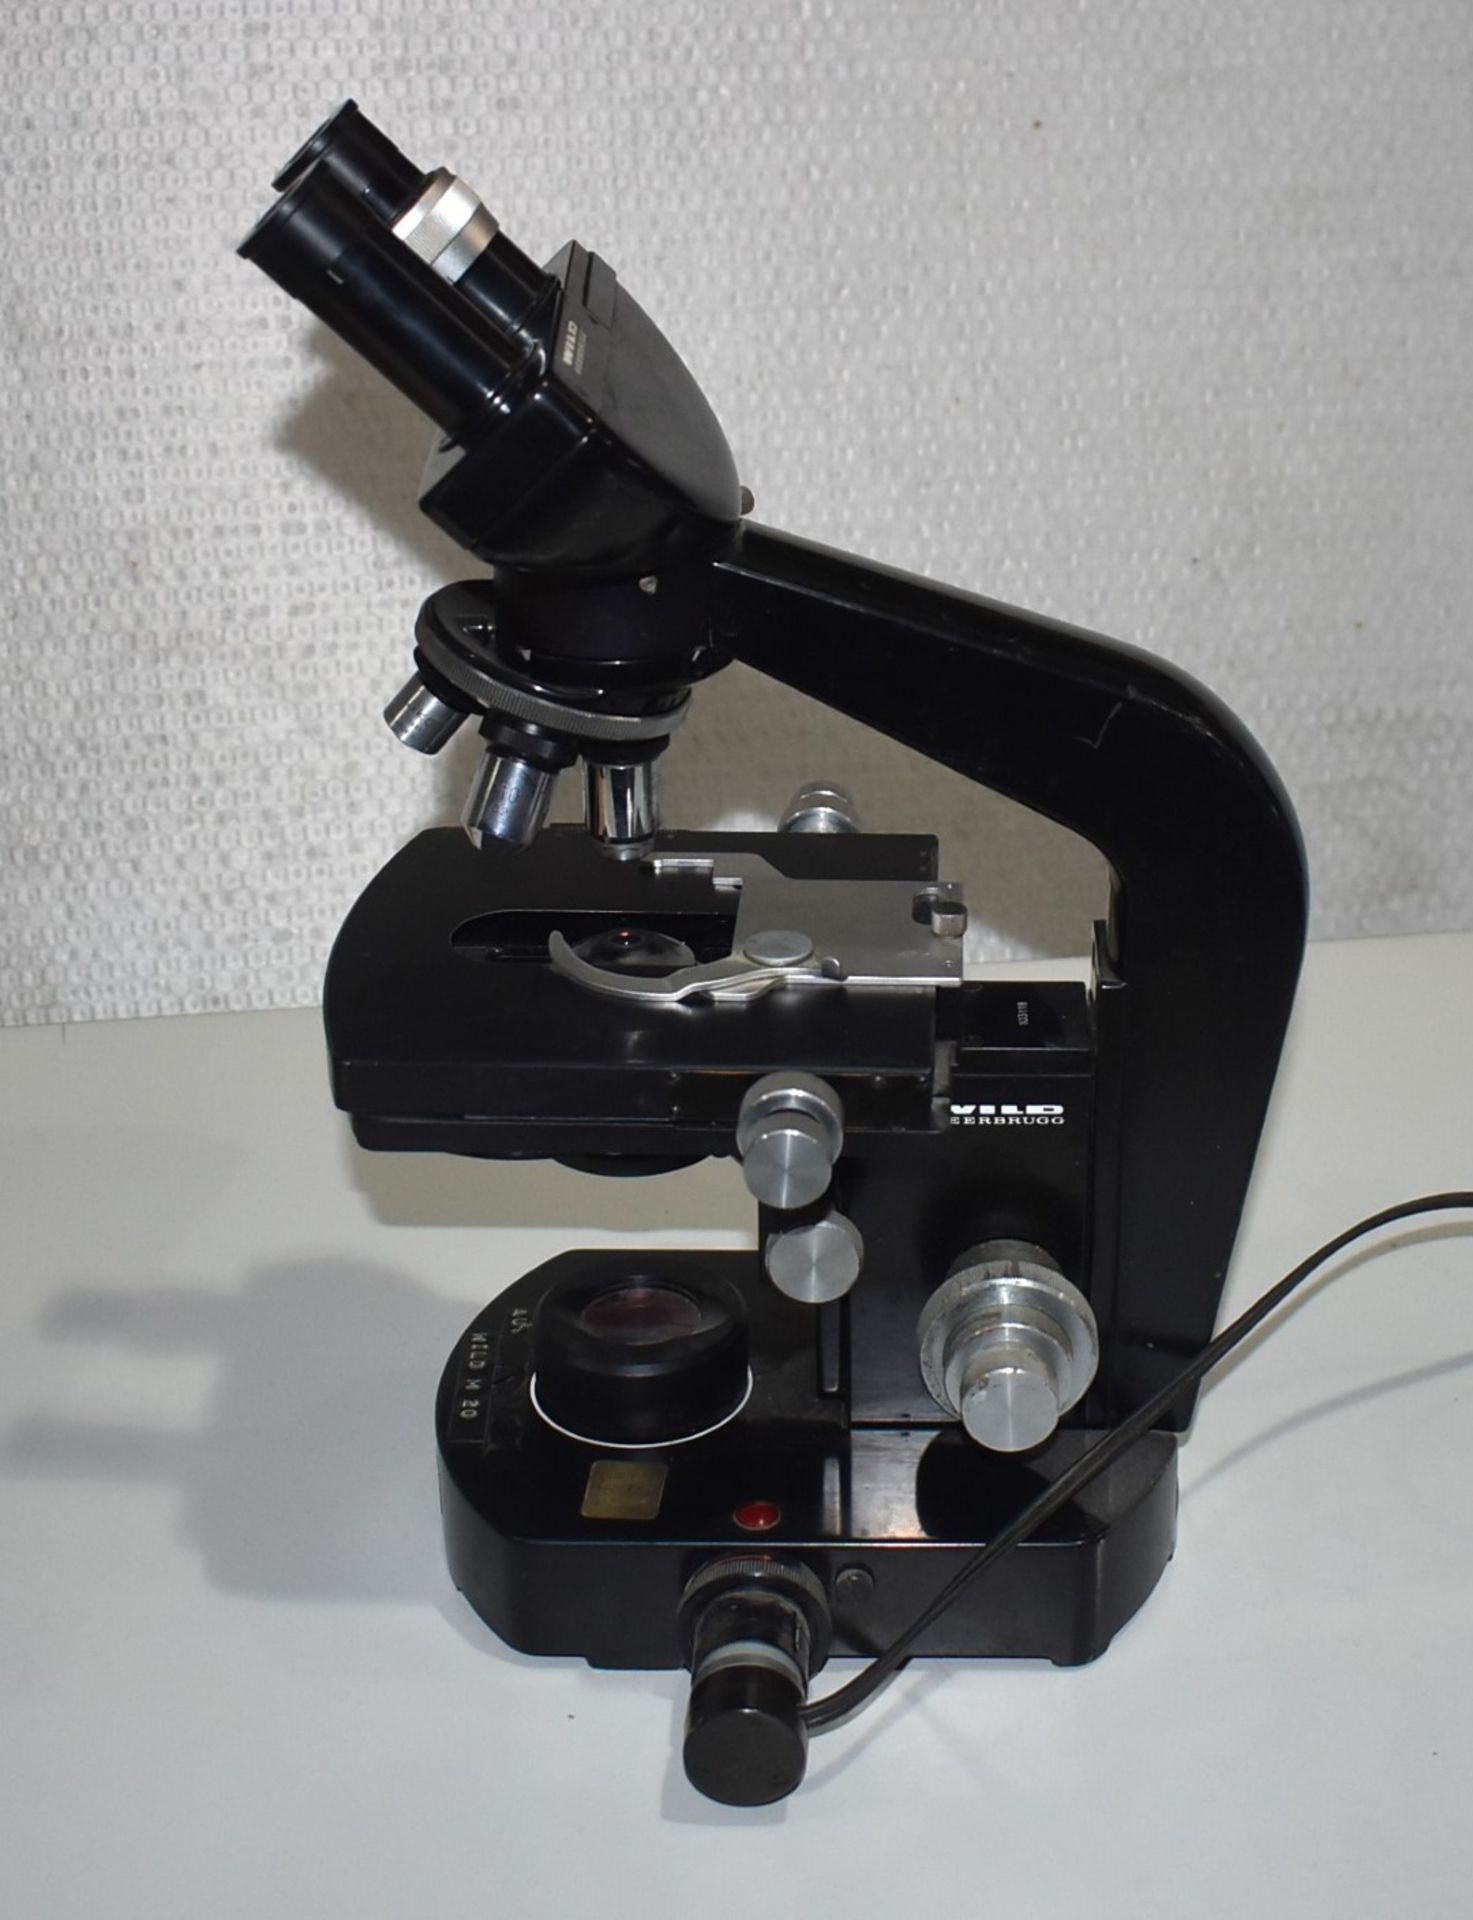 1 x Wild M20 Microscope - Image 9 of 9